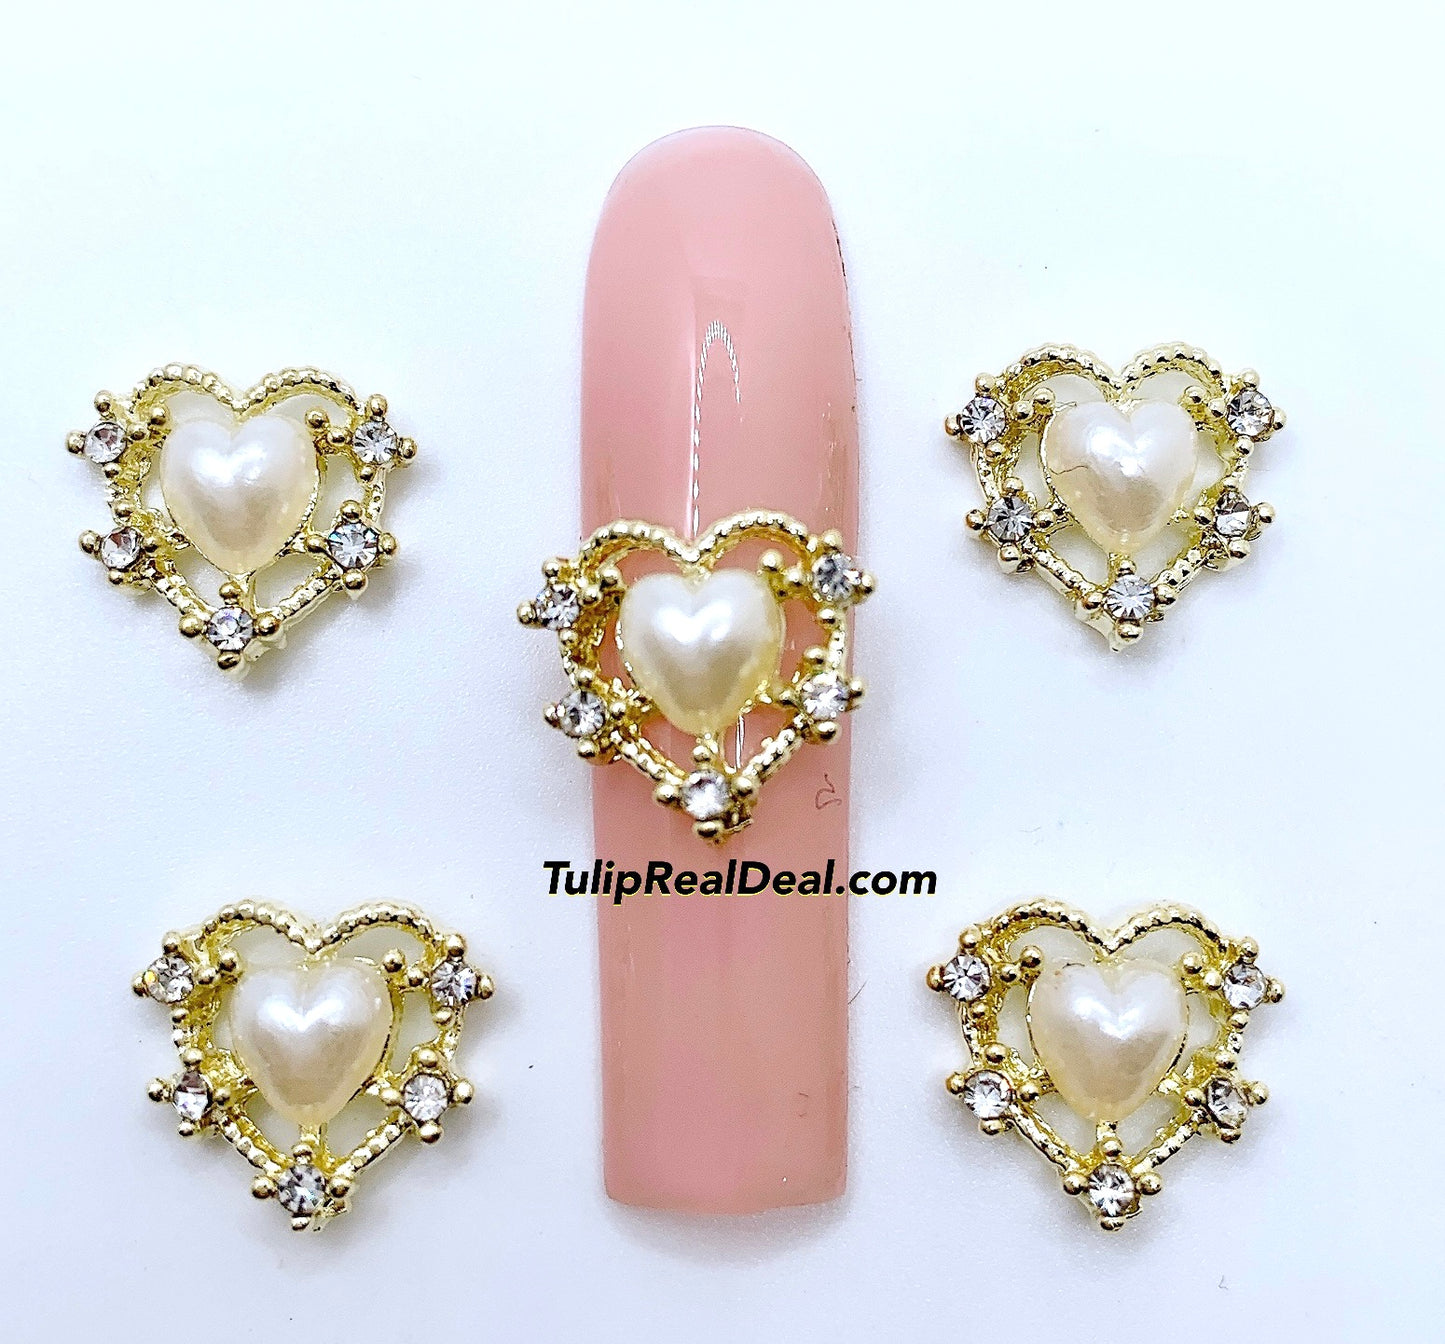 Bling Heart Pearl nail charms 4pcs